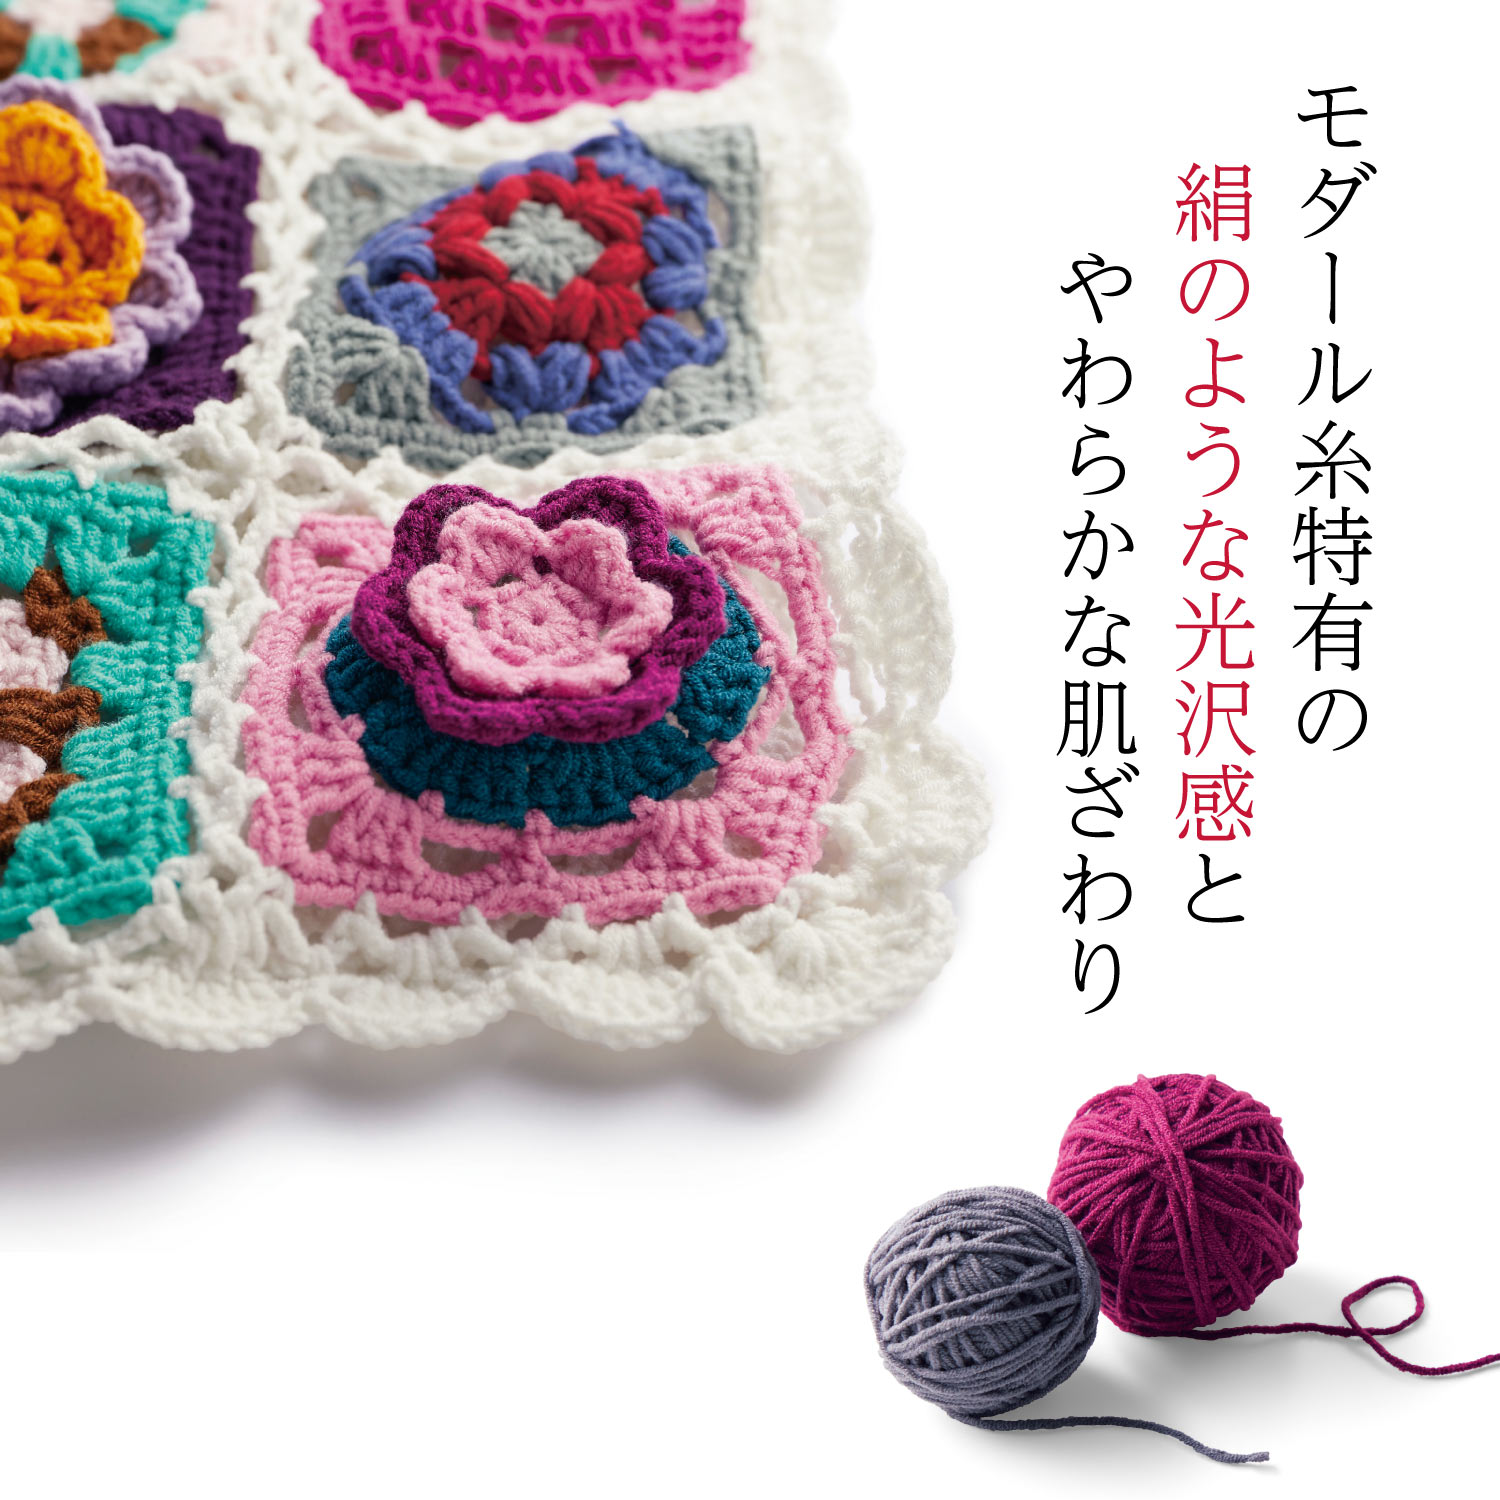 【定期お届け】 つなげて楽しむレトロポップなモチーフ編み手作りキット ：6回サイクルフリー